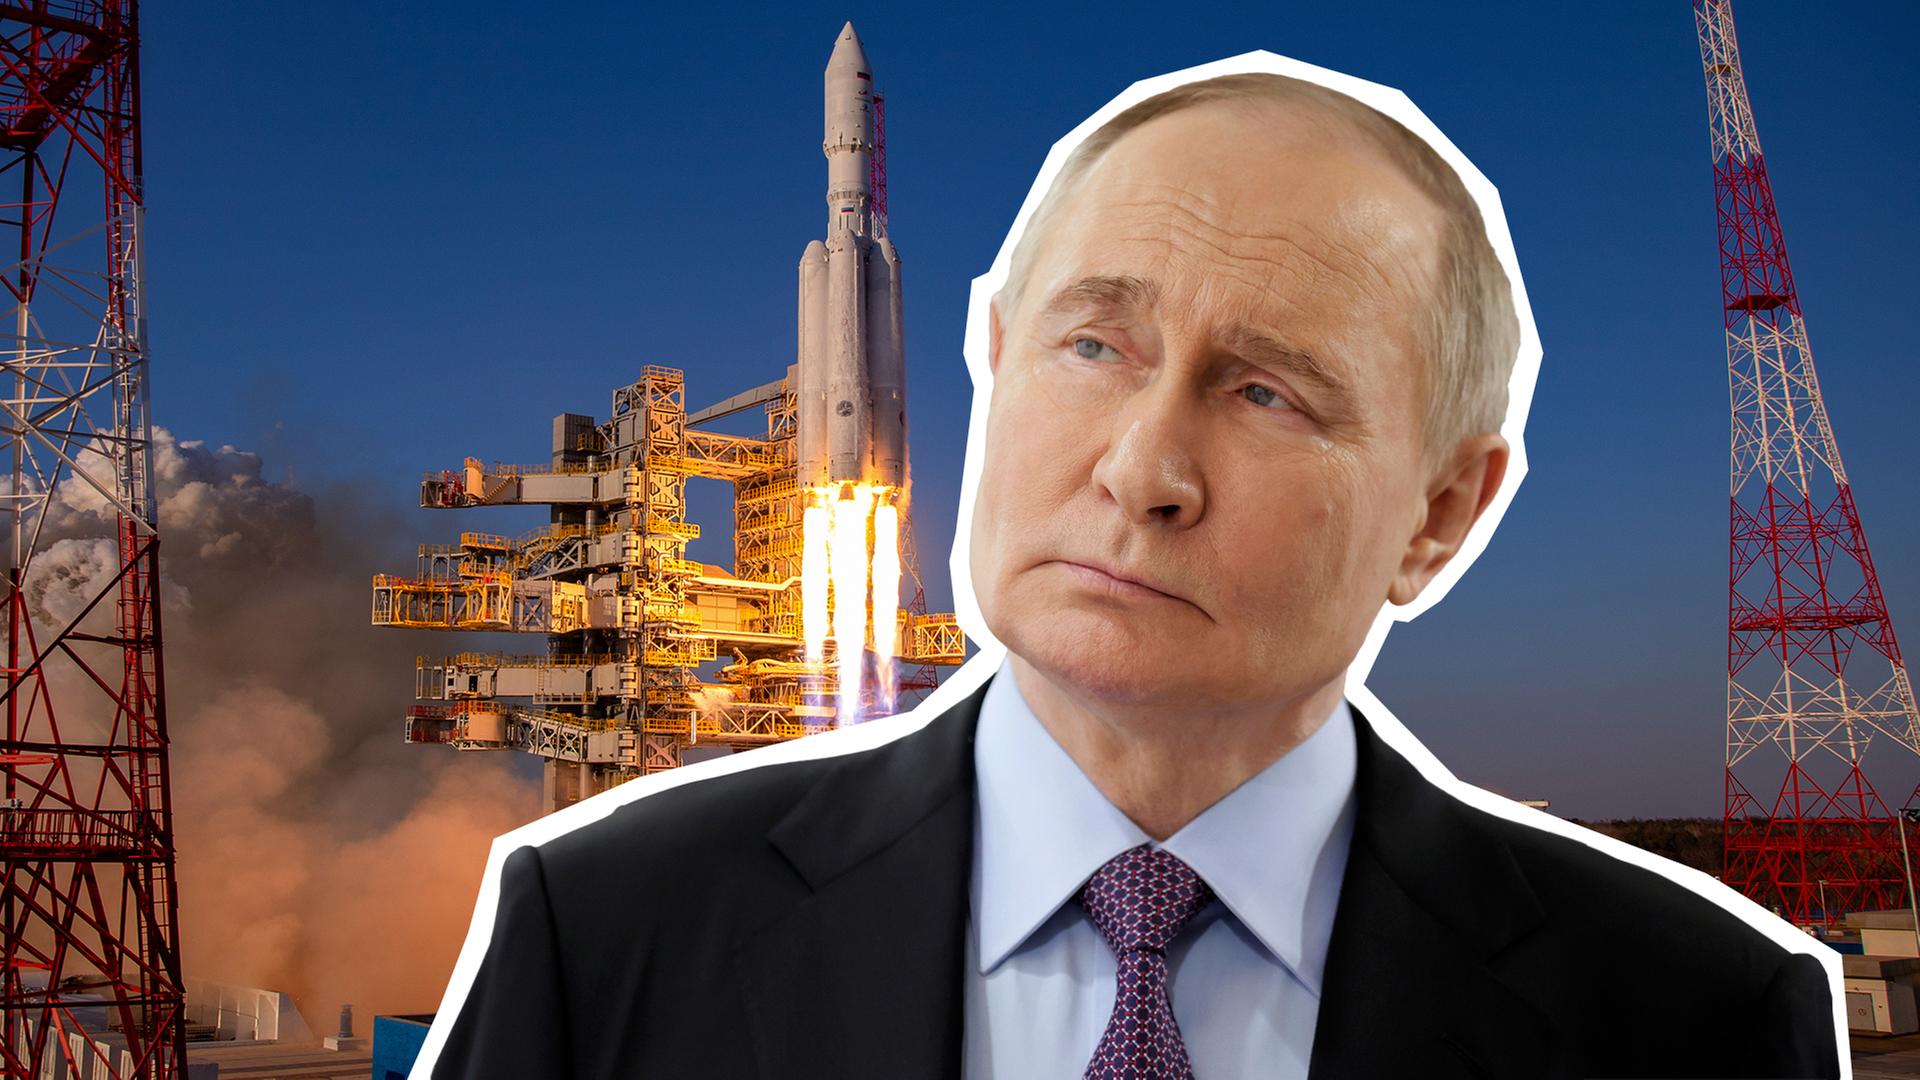 Russland schickt Weltraumwaffe ins All?